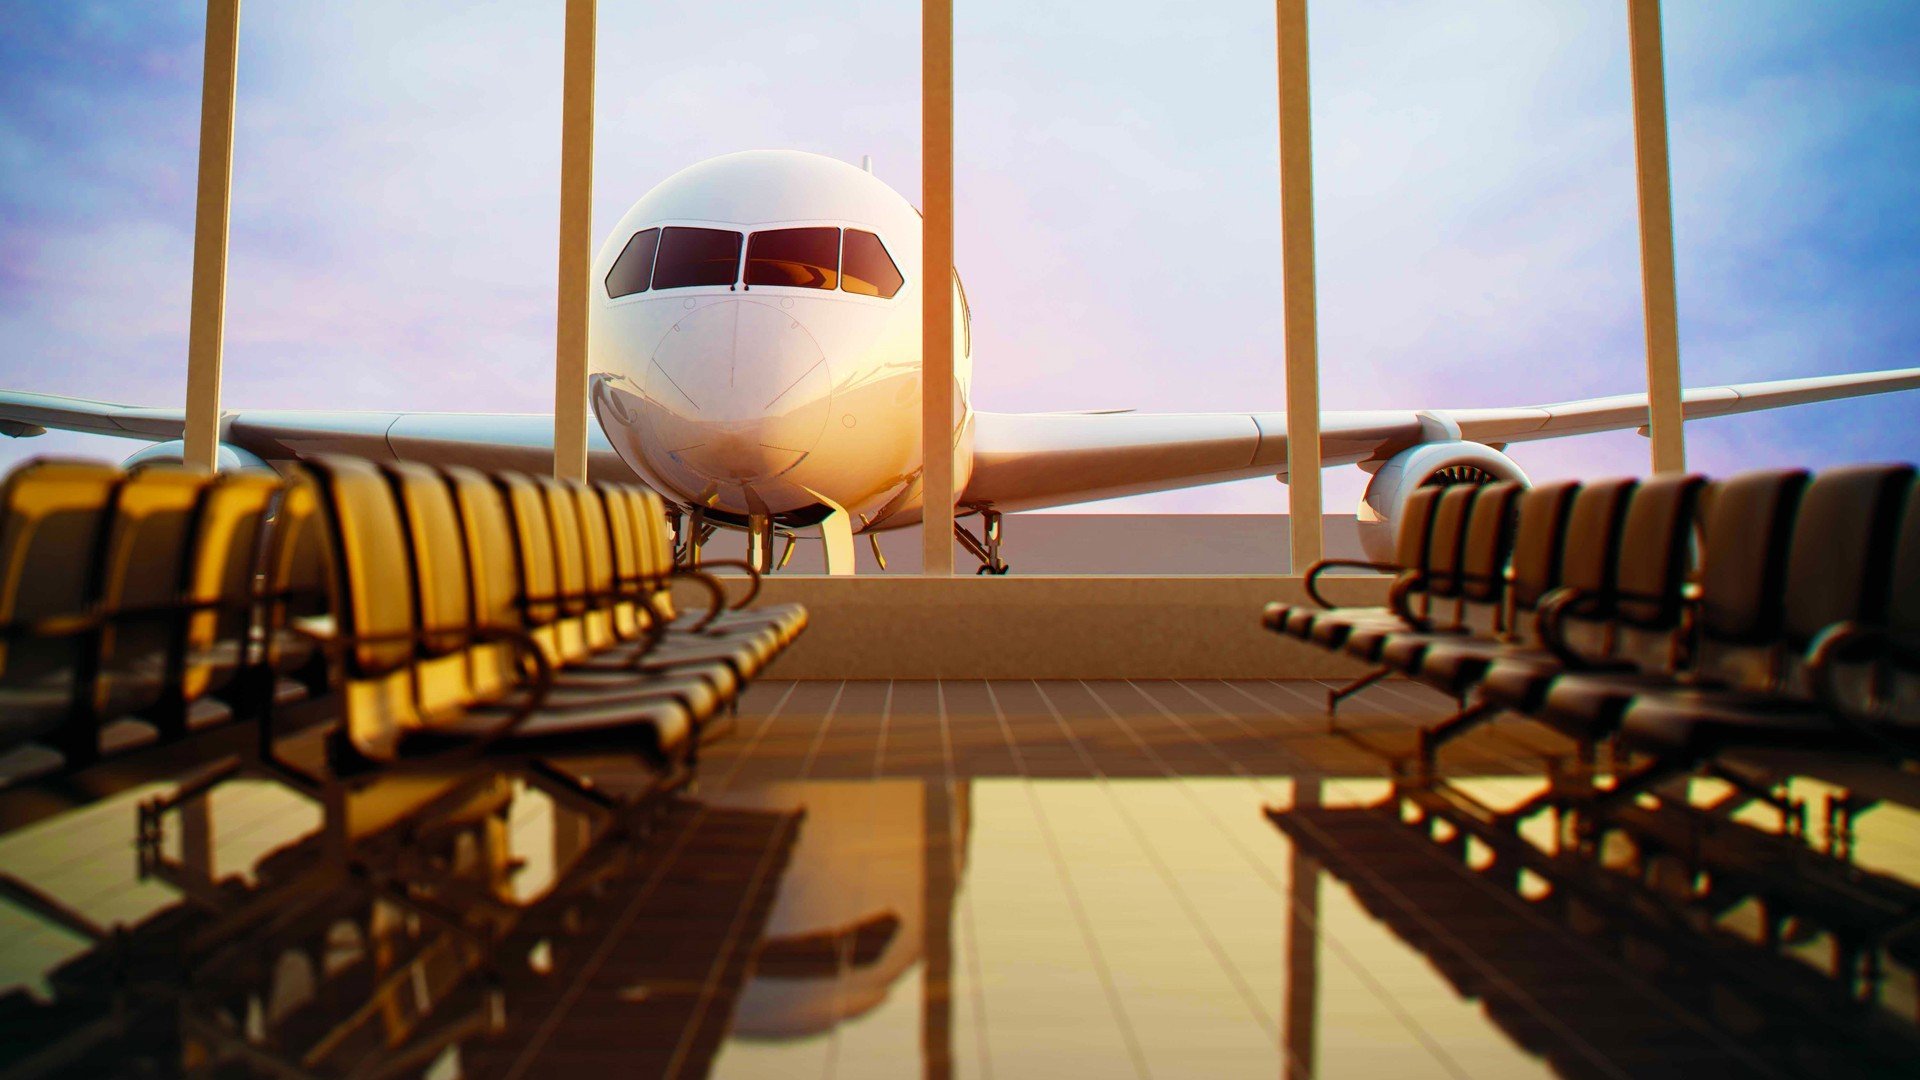 airplane, Airport, Chair, Passenger aircraft, Window, Sunlight, Reflection, Depth of field Wallpaper